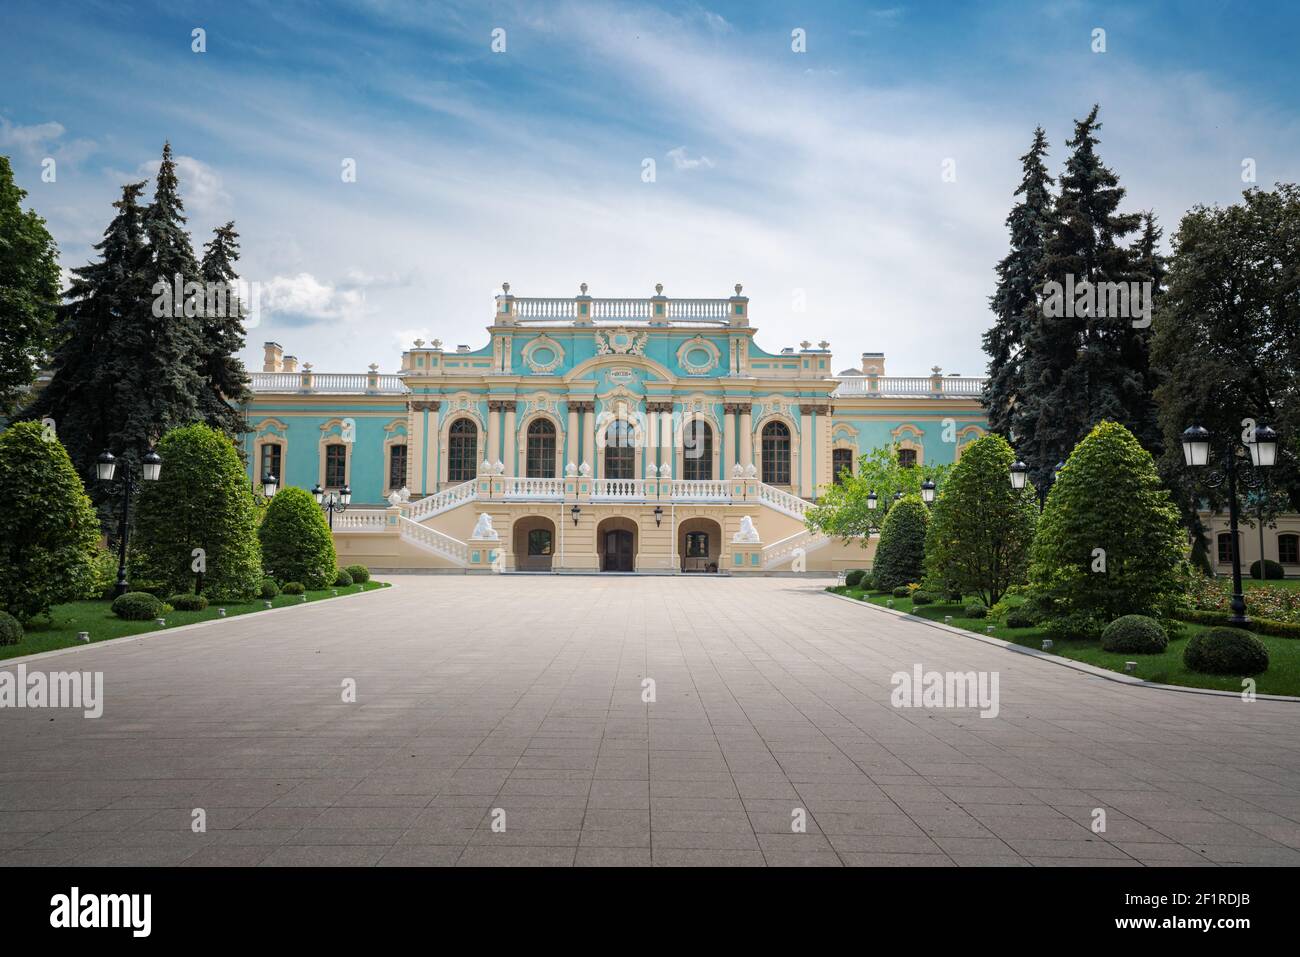 Mariyinsky Palace presidential residence - Kiev, Ukraine Stock Photo